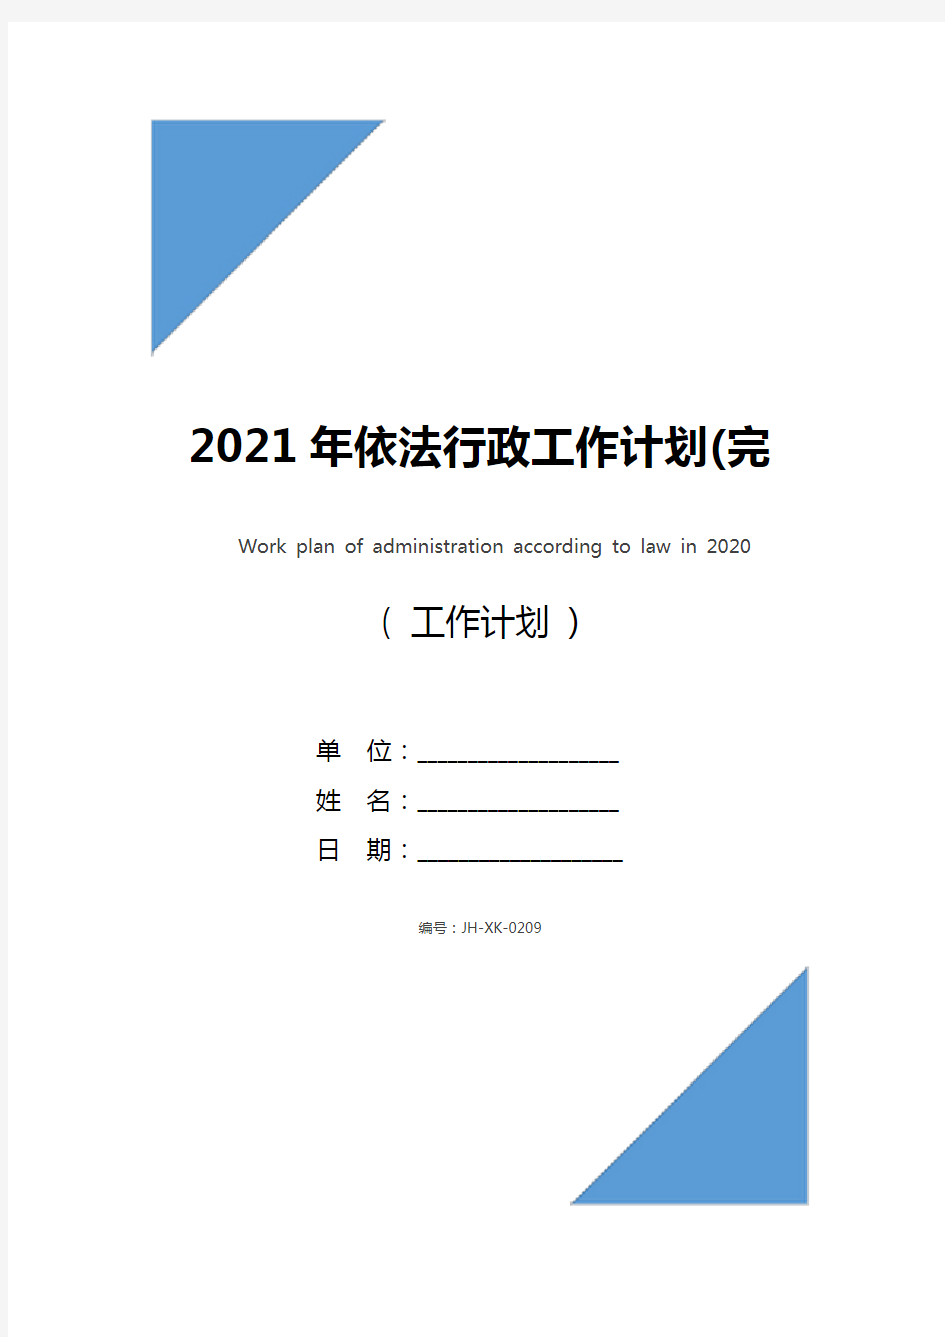 2021年依法行政工作计划(完整版)